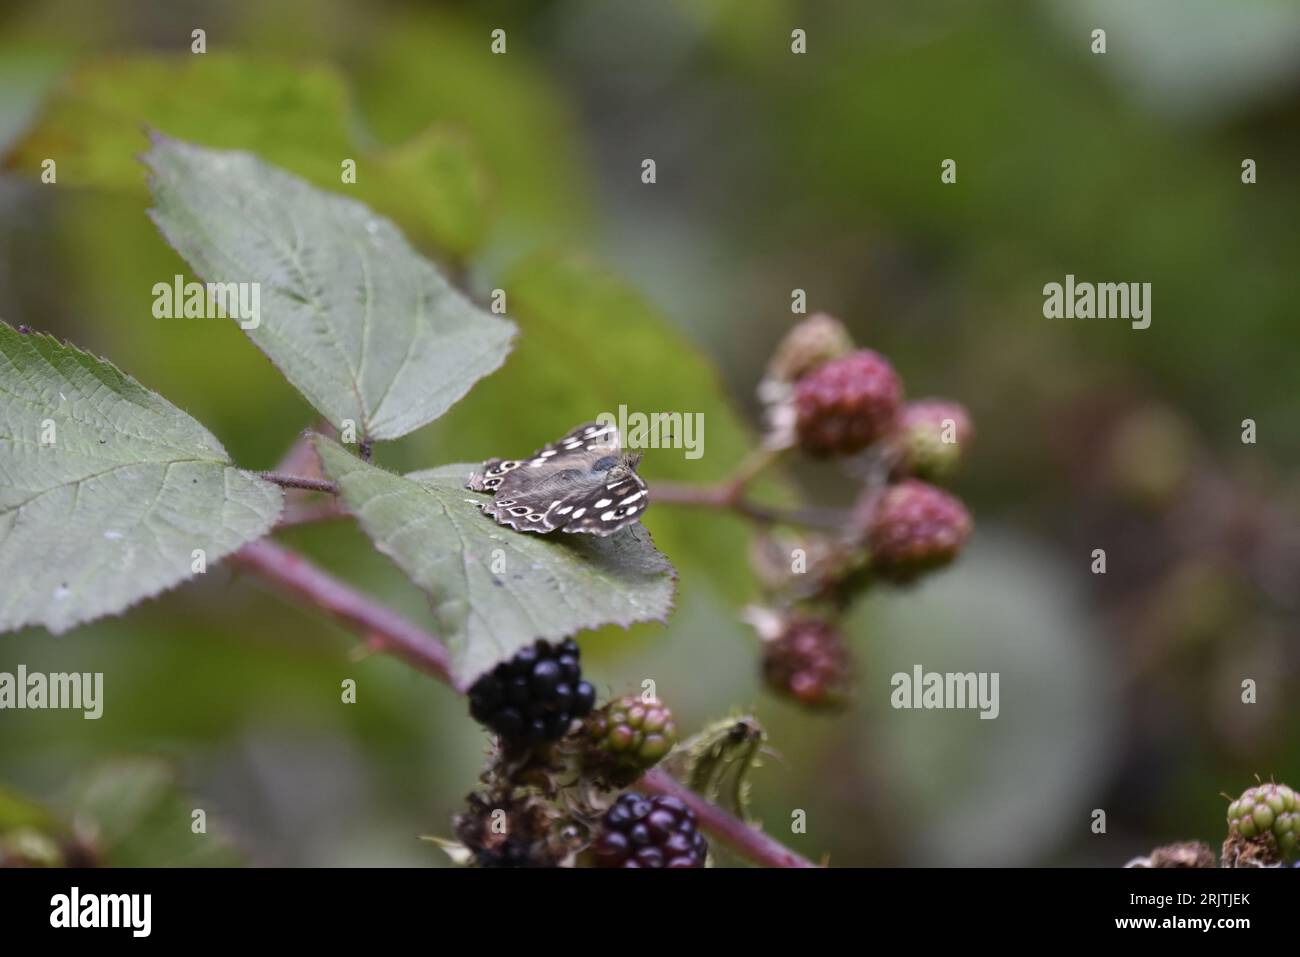 Farfalla di legno macchiata (Parange aegeria) seduta a destra sulla parte superiore di una foglia di BlackBerry, con ali aperte, antenna e volto visibili, nel Regno Unito Foto Stock